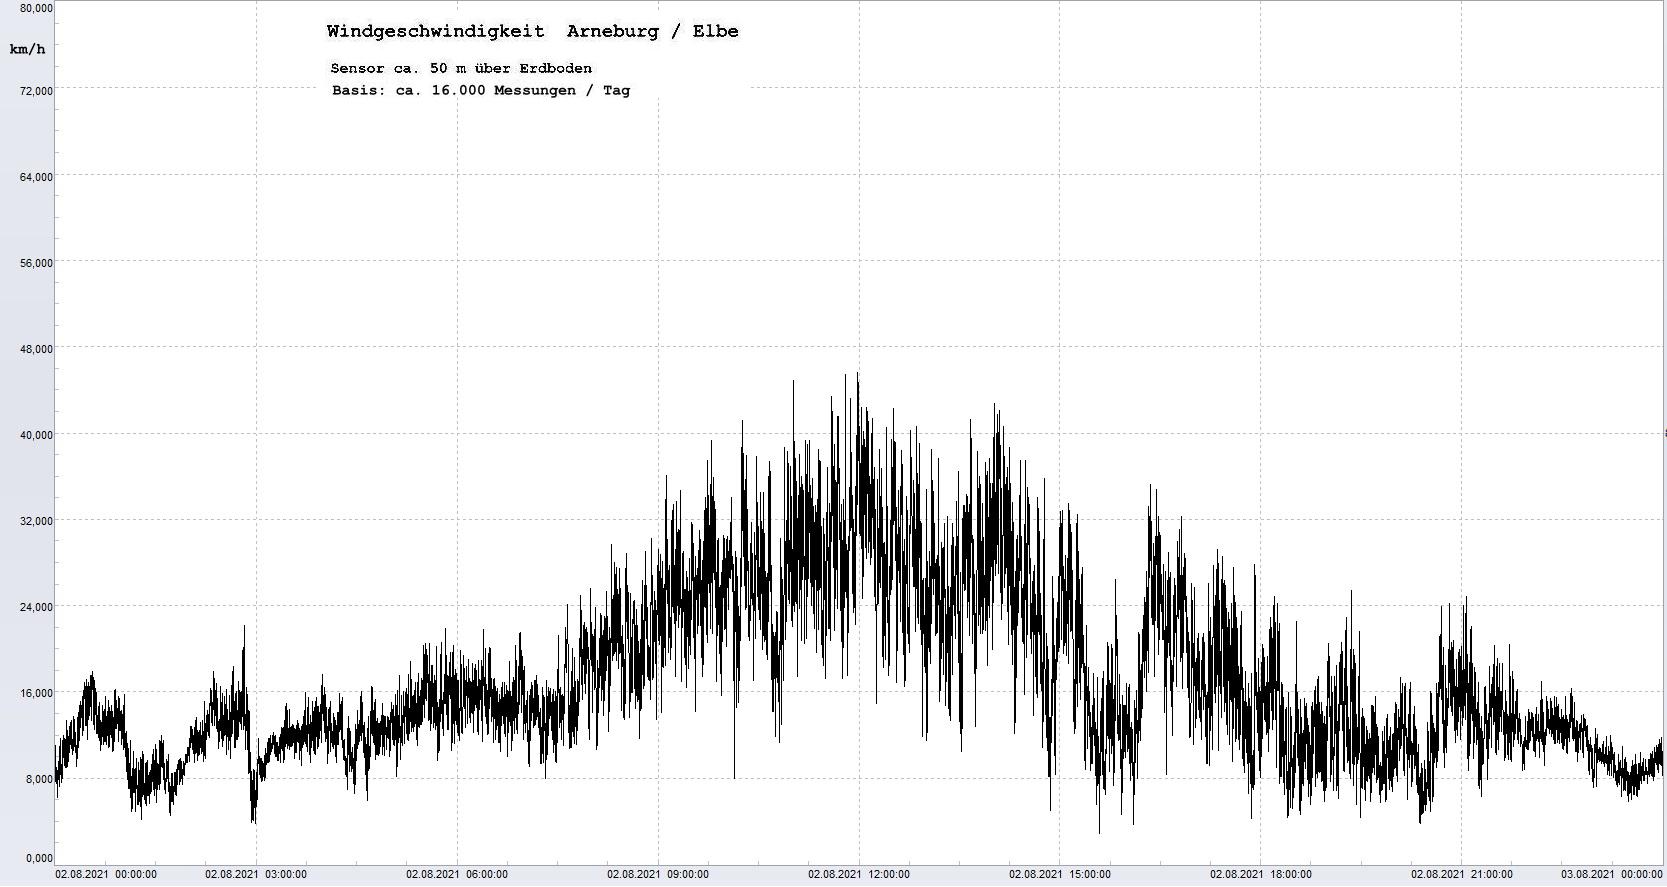 Arneburg Tages-Diagramm Winddaten, 02.08.2021
  Diagramm, Sensor auf Gebude, ca. 50 m ber Erdboden, Basis: 5s-Aufzeichnung